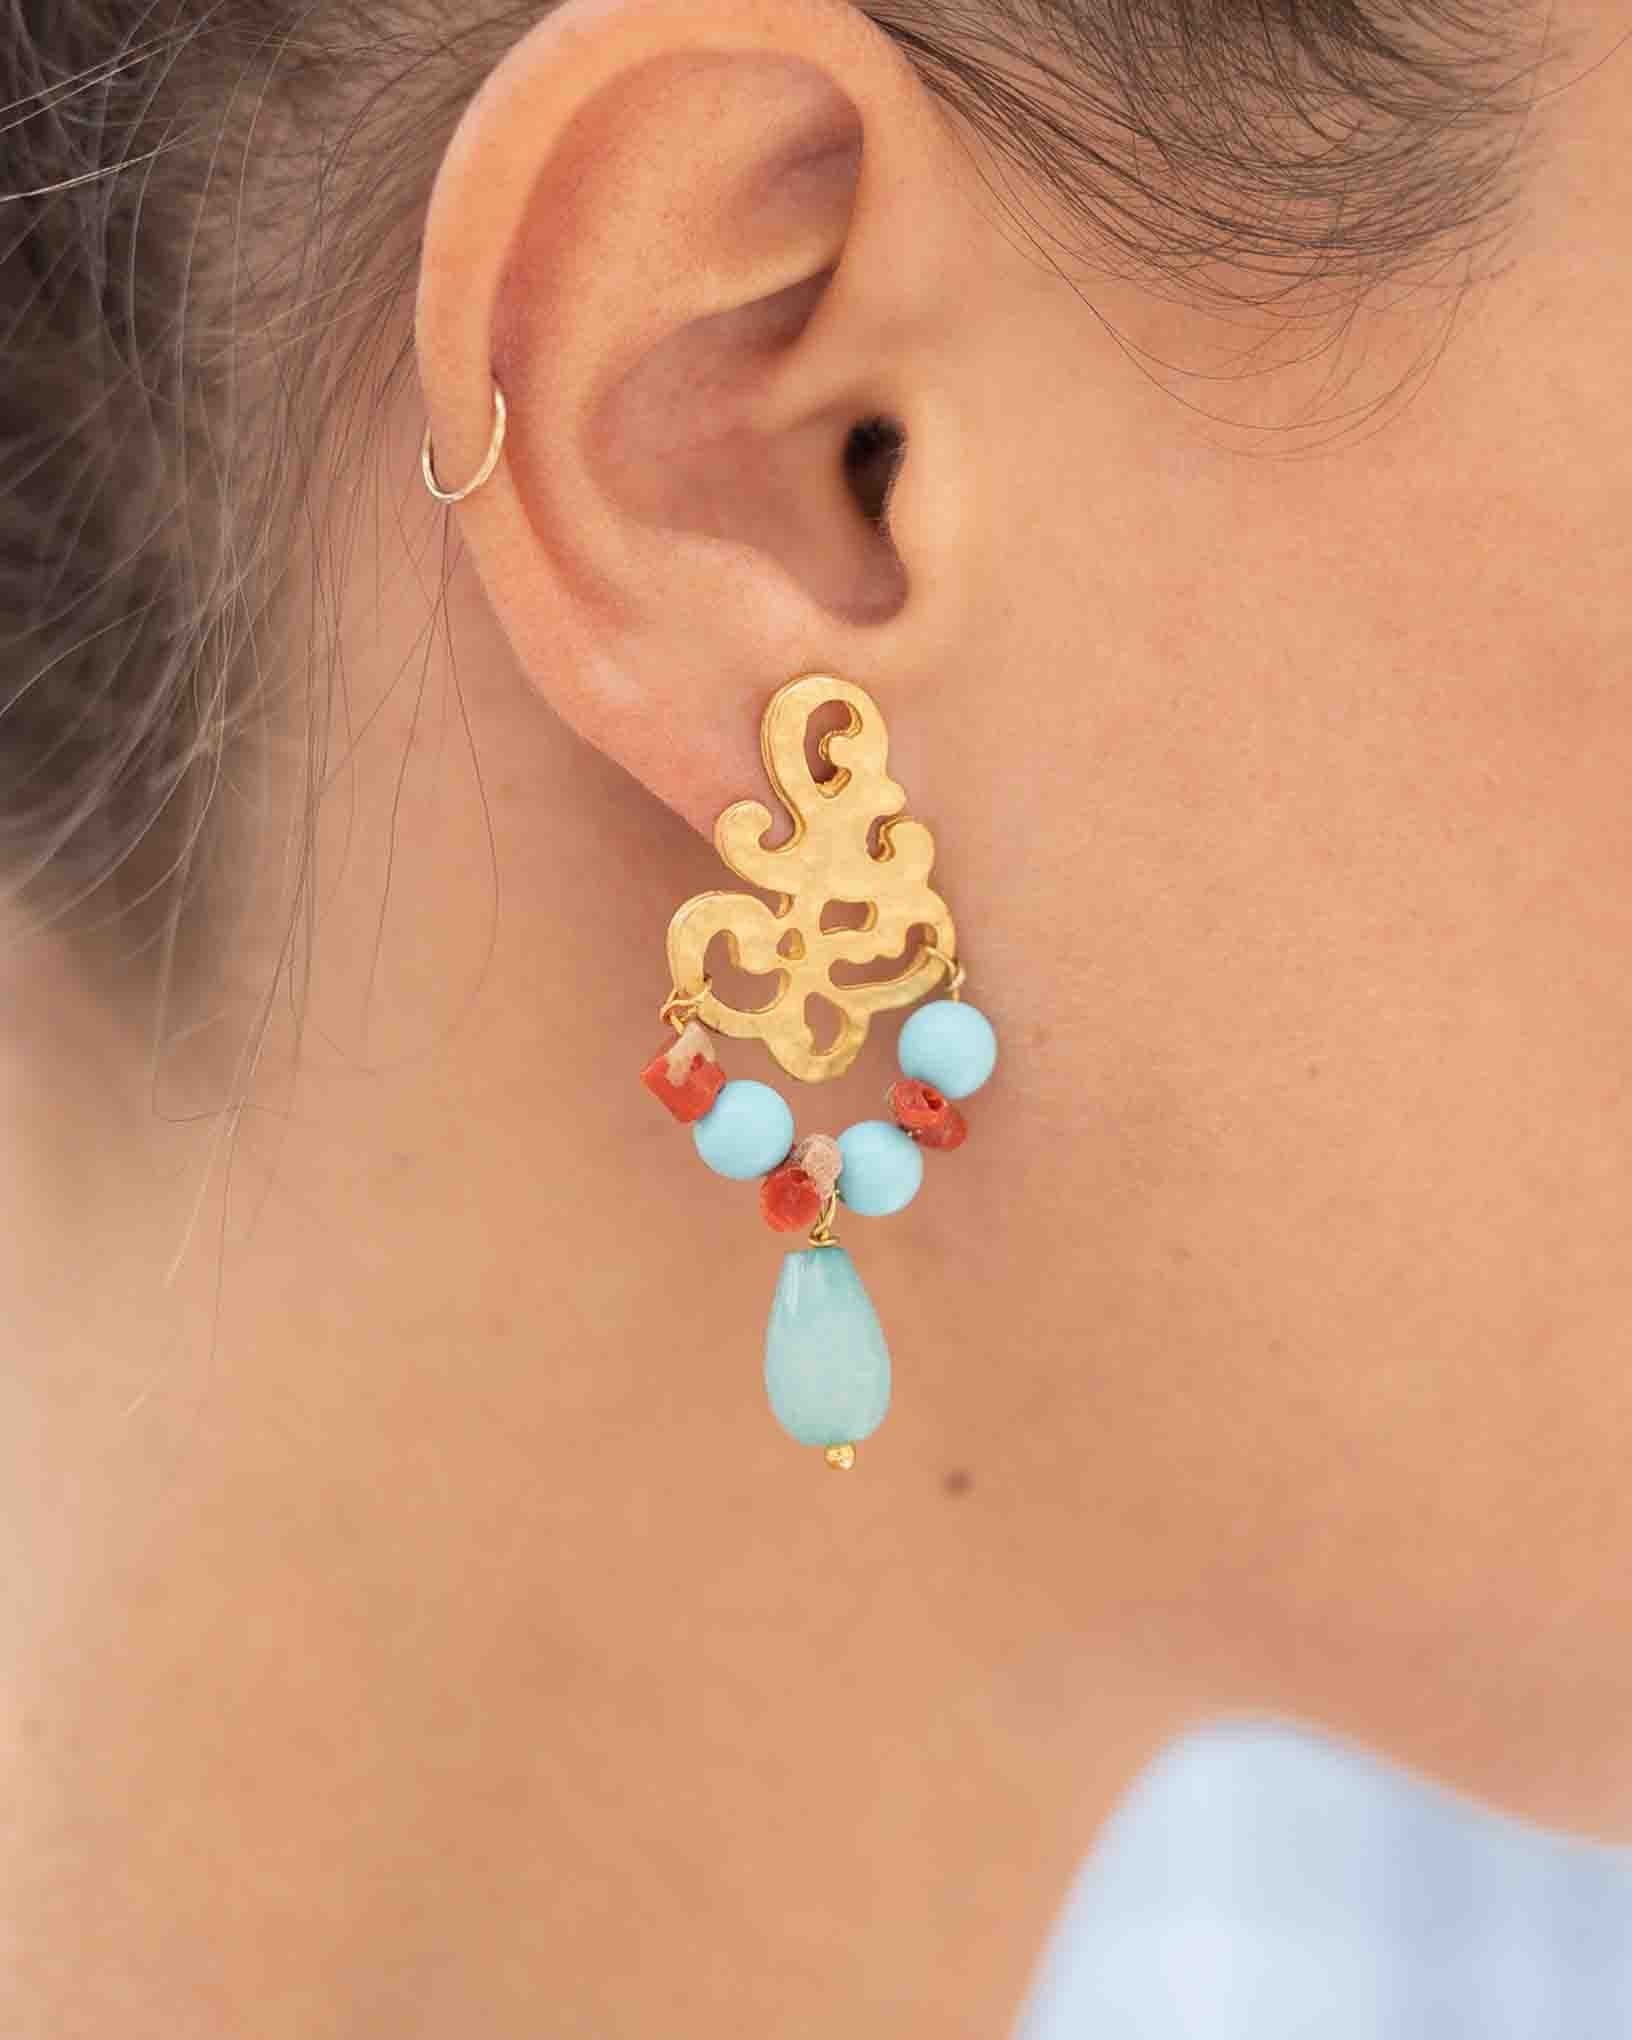 Ohrring Levante aus der Kollektion Perle e Coralli von Donna Rachele Jewelry